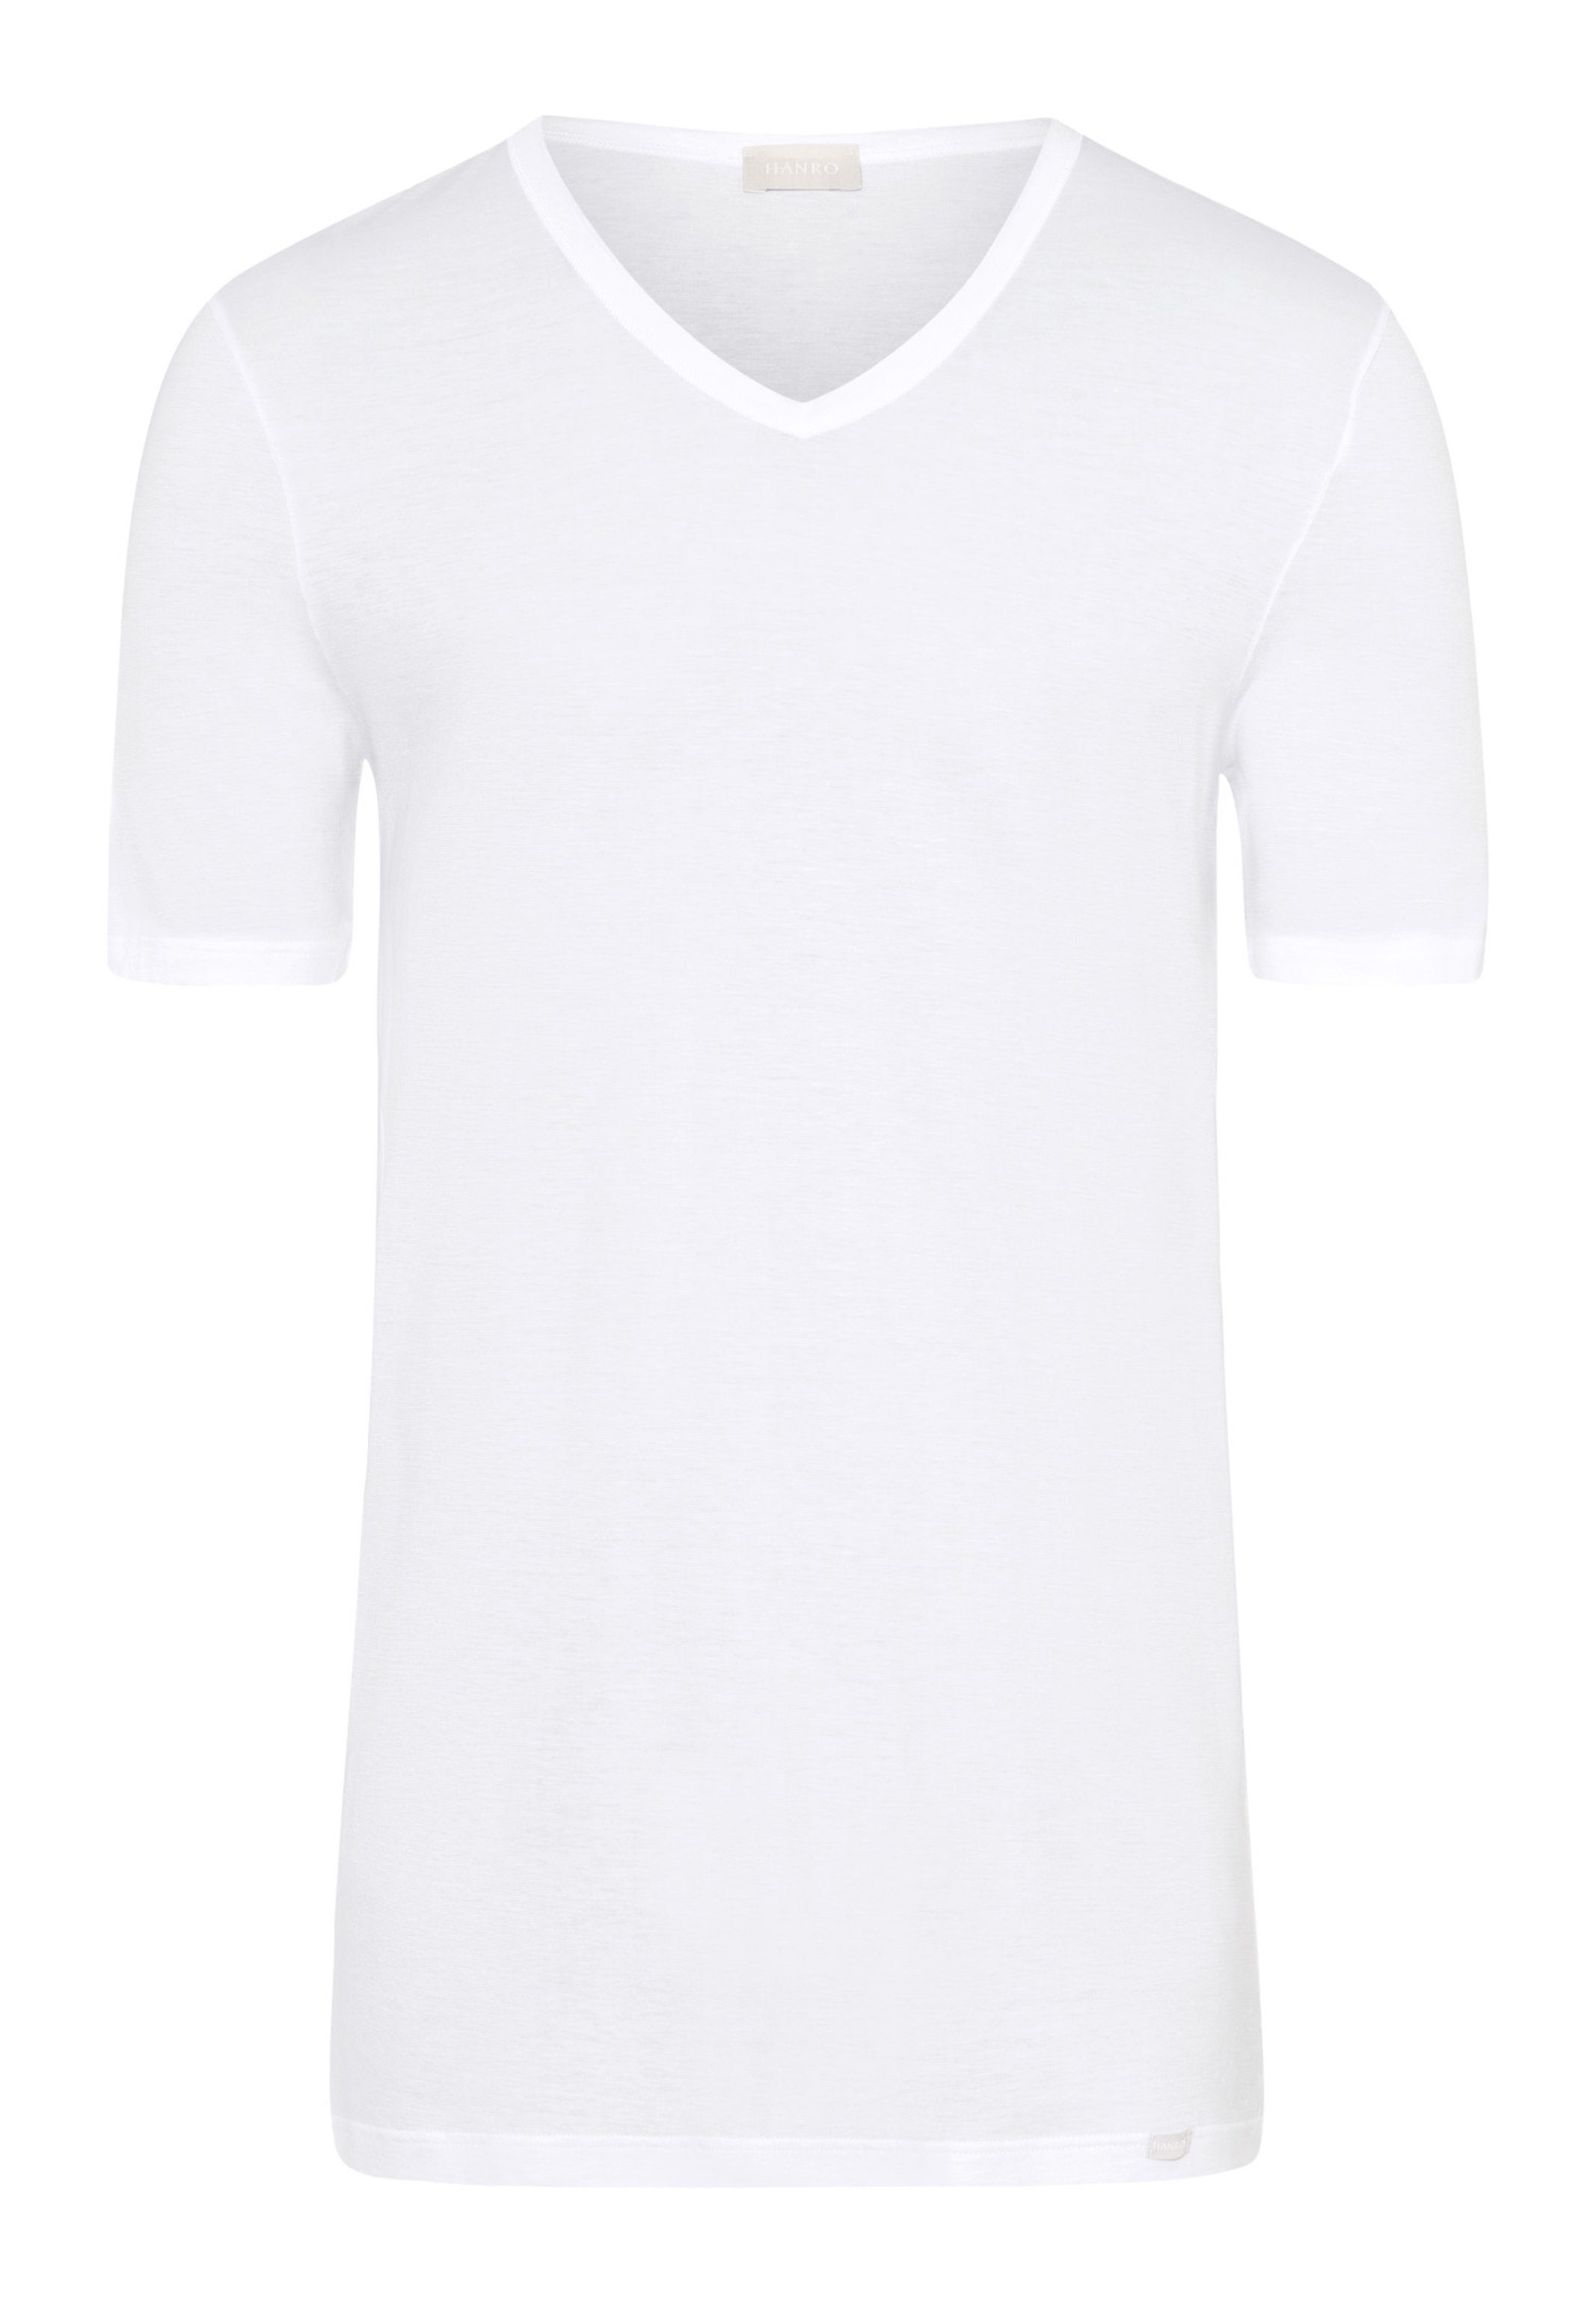 - - Hanro Ultralight Schnelltrocknend Unterhemd / Baumwolle Kurzarm white (1-St) Shirt Unterhemd